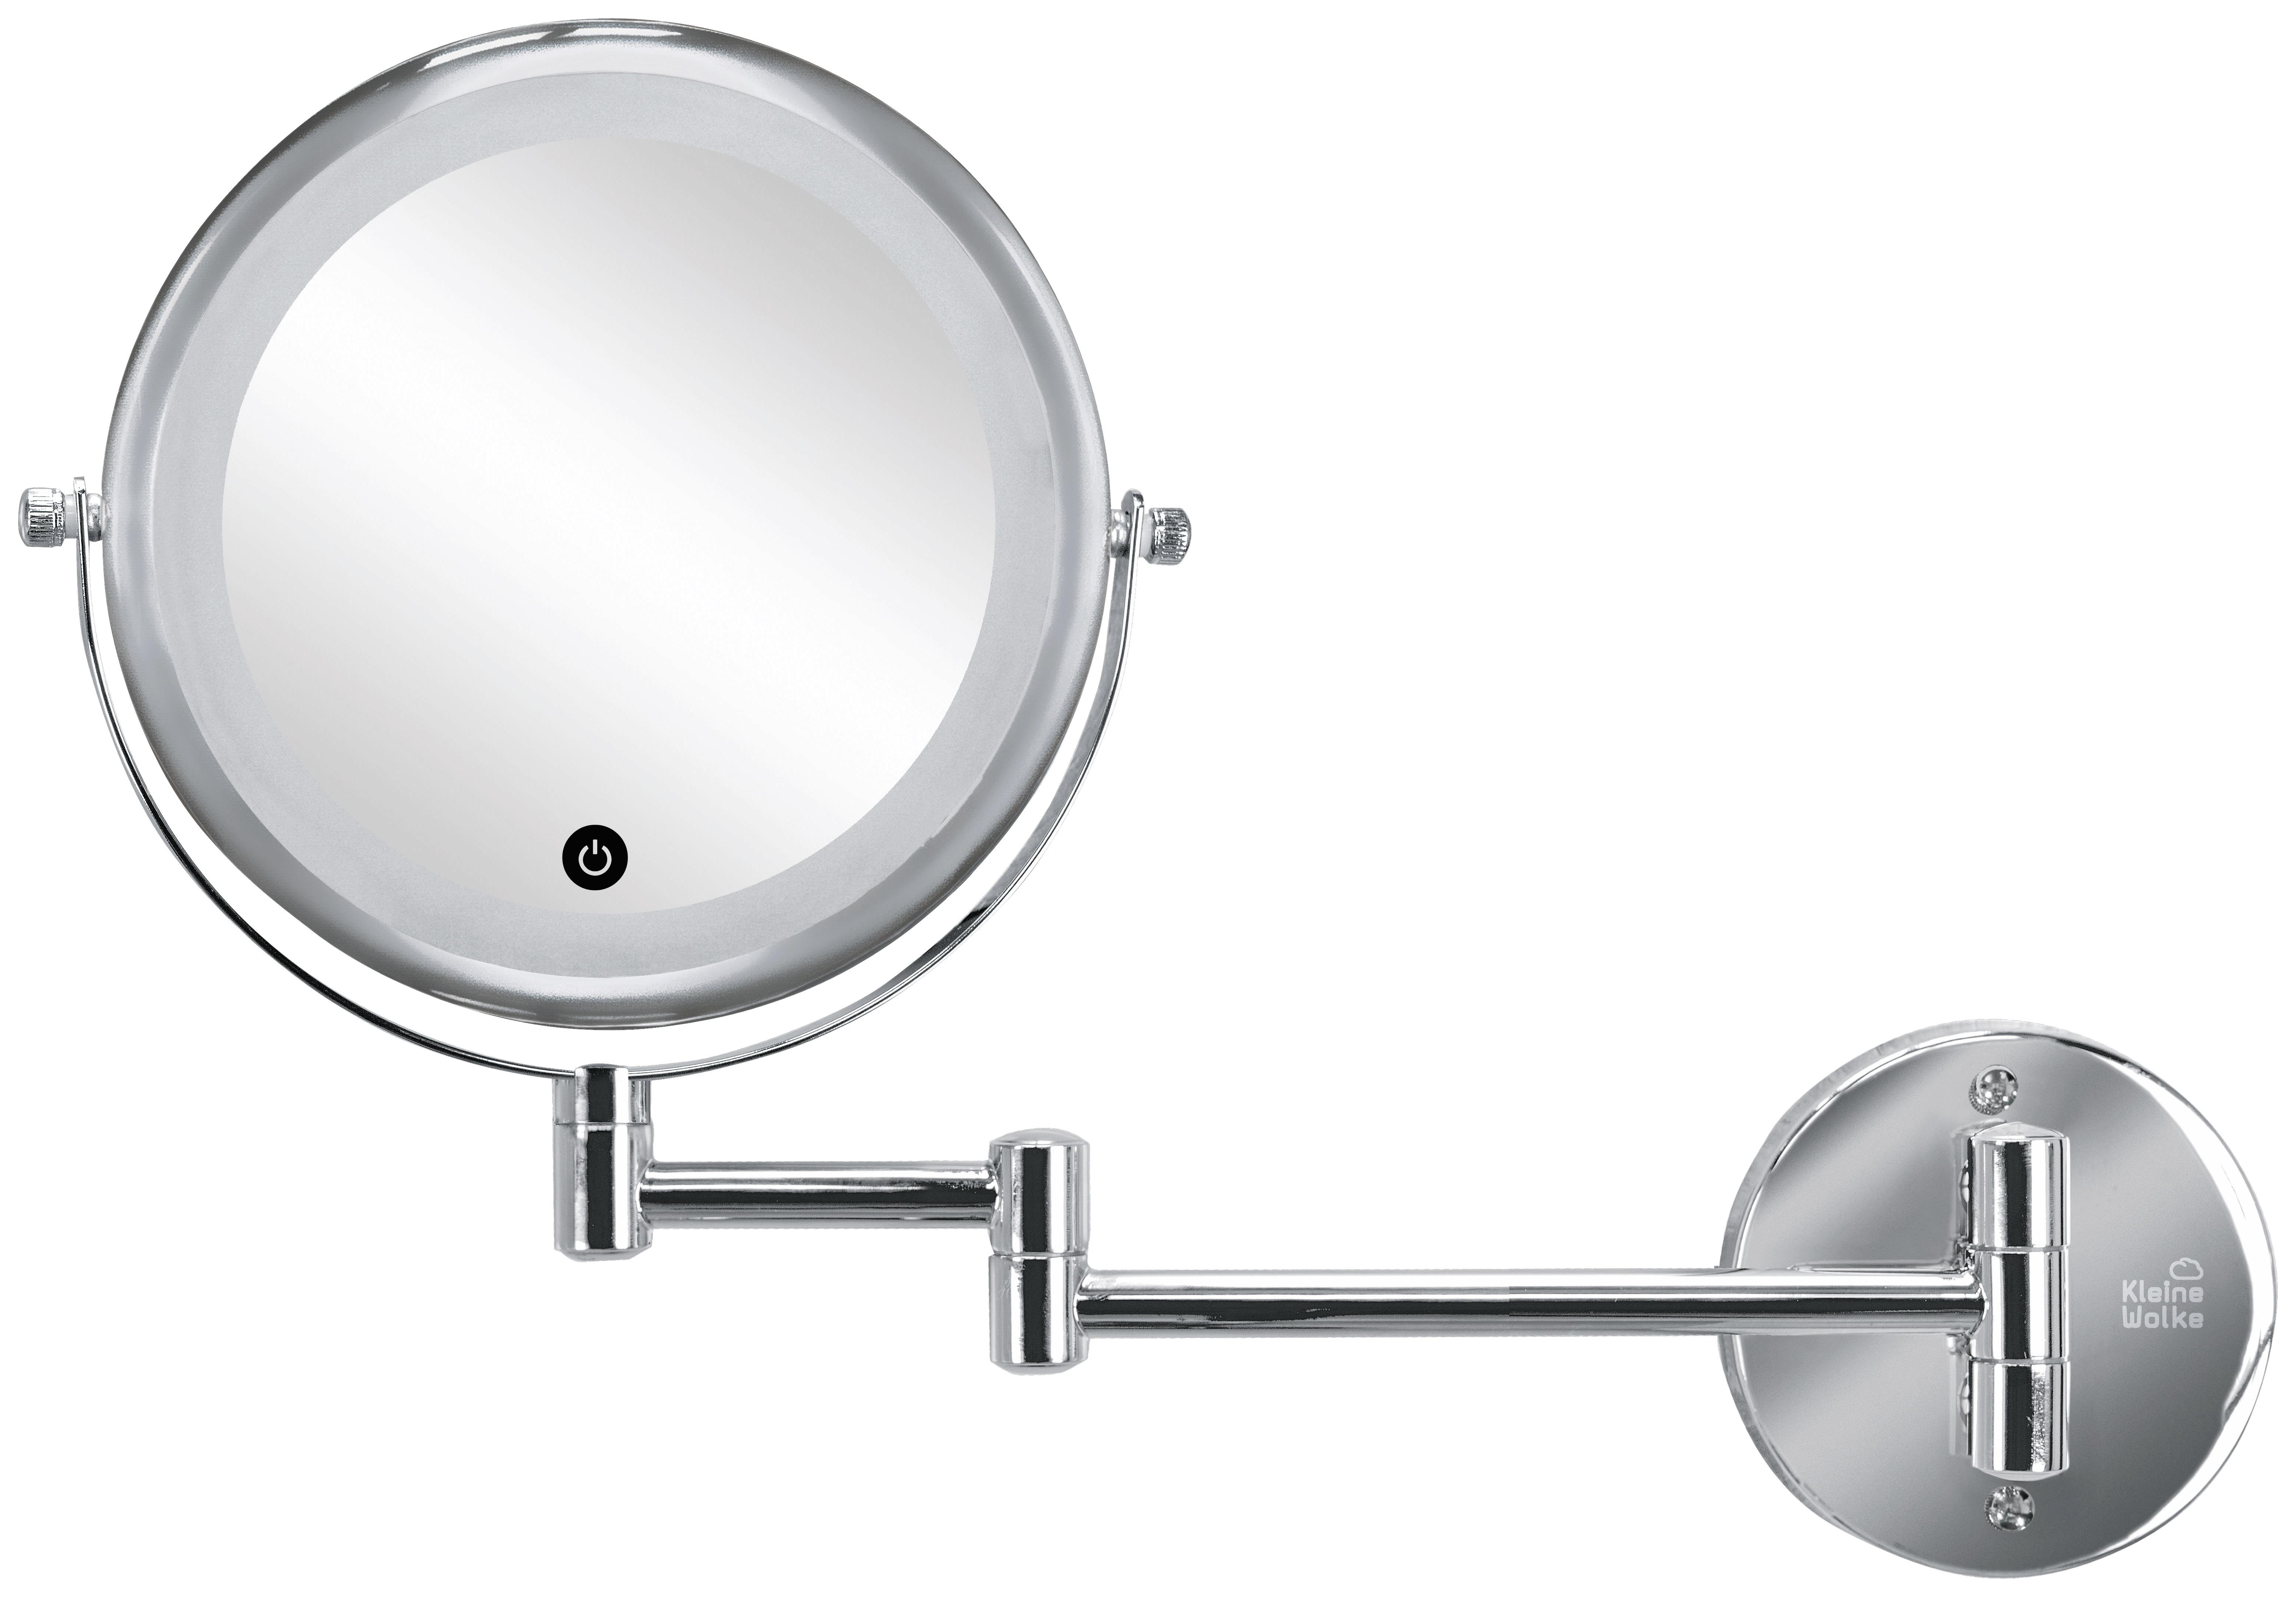 Tischspiegel, kleiner Spiegel, Standspiegel, Schminkspiegel, oval